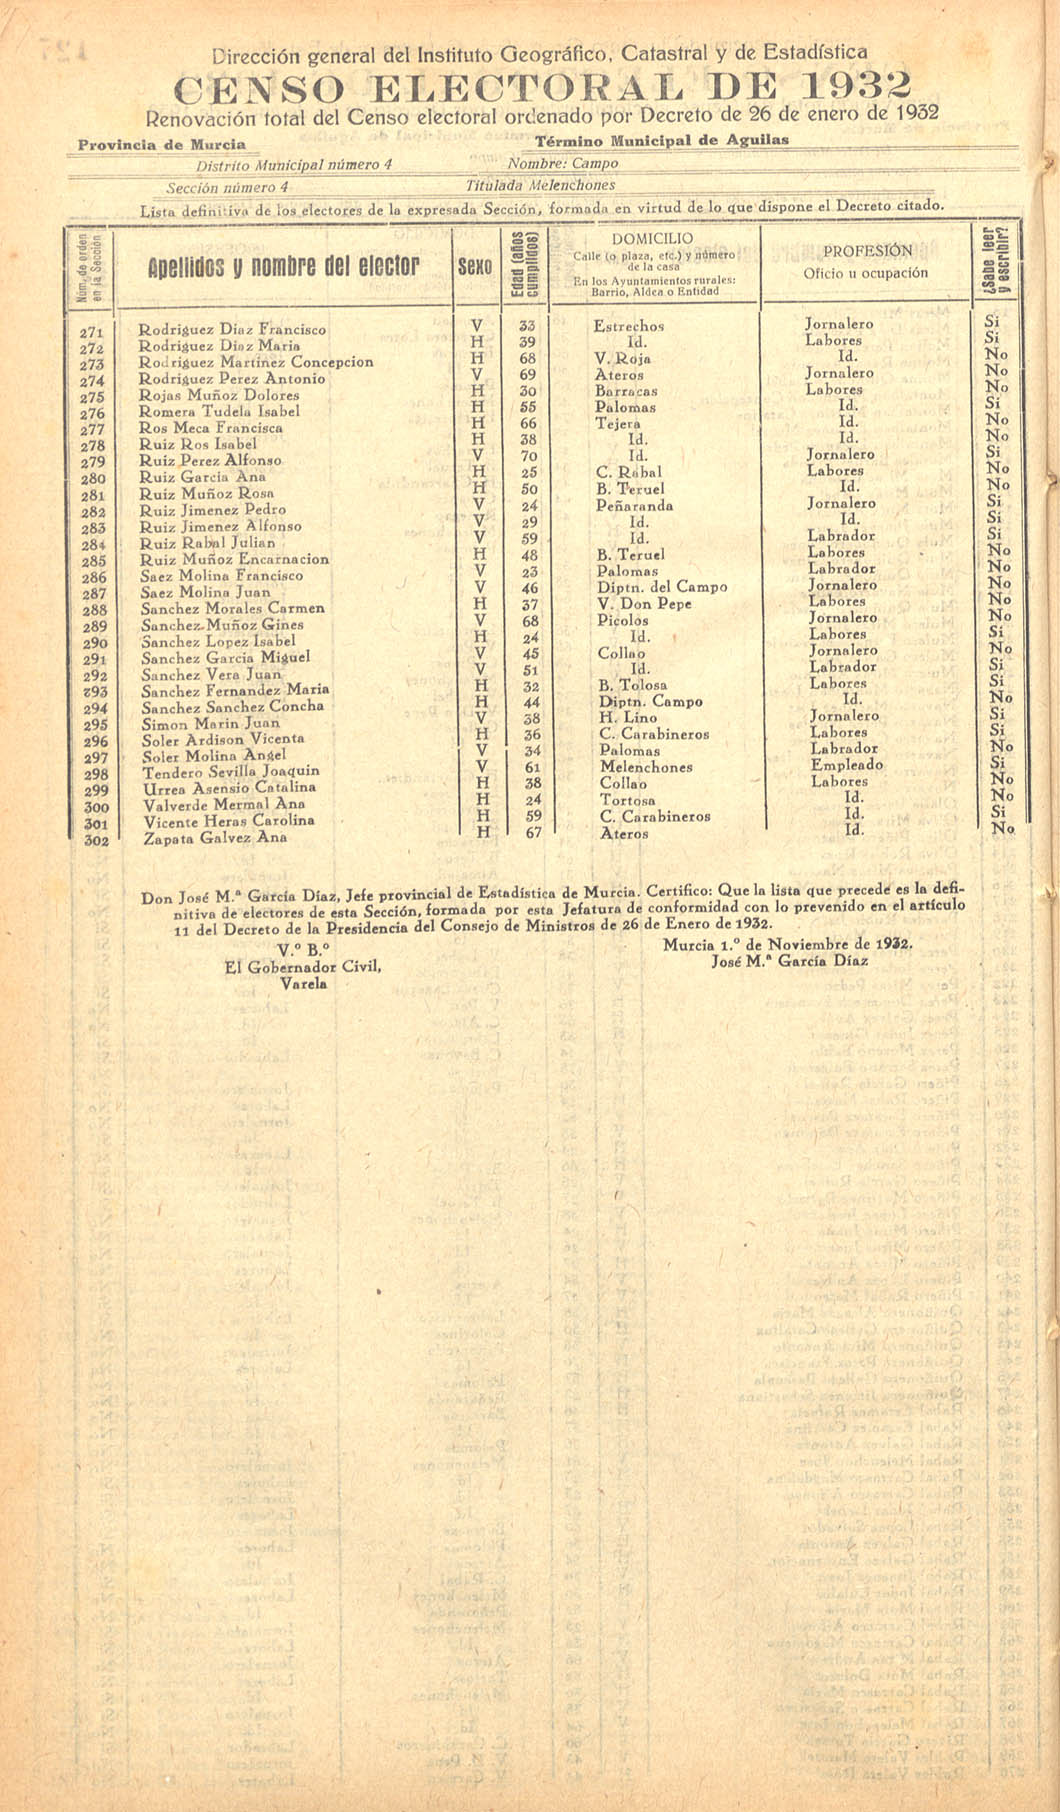 Censo electoral provincial de 1932. Listas definitivas de Águilas, formadas en virtud del Decreto de 26 de enero de 1932.